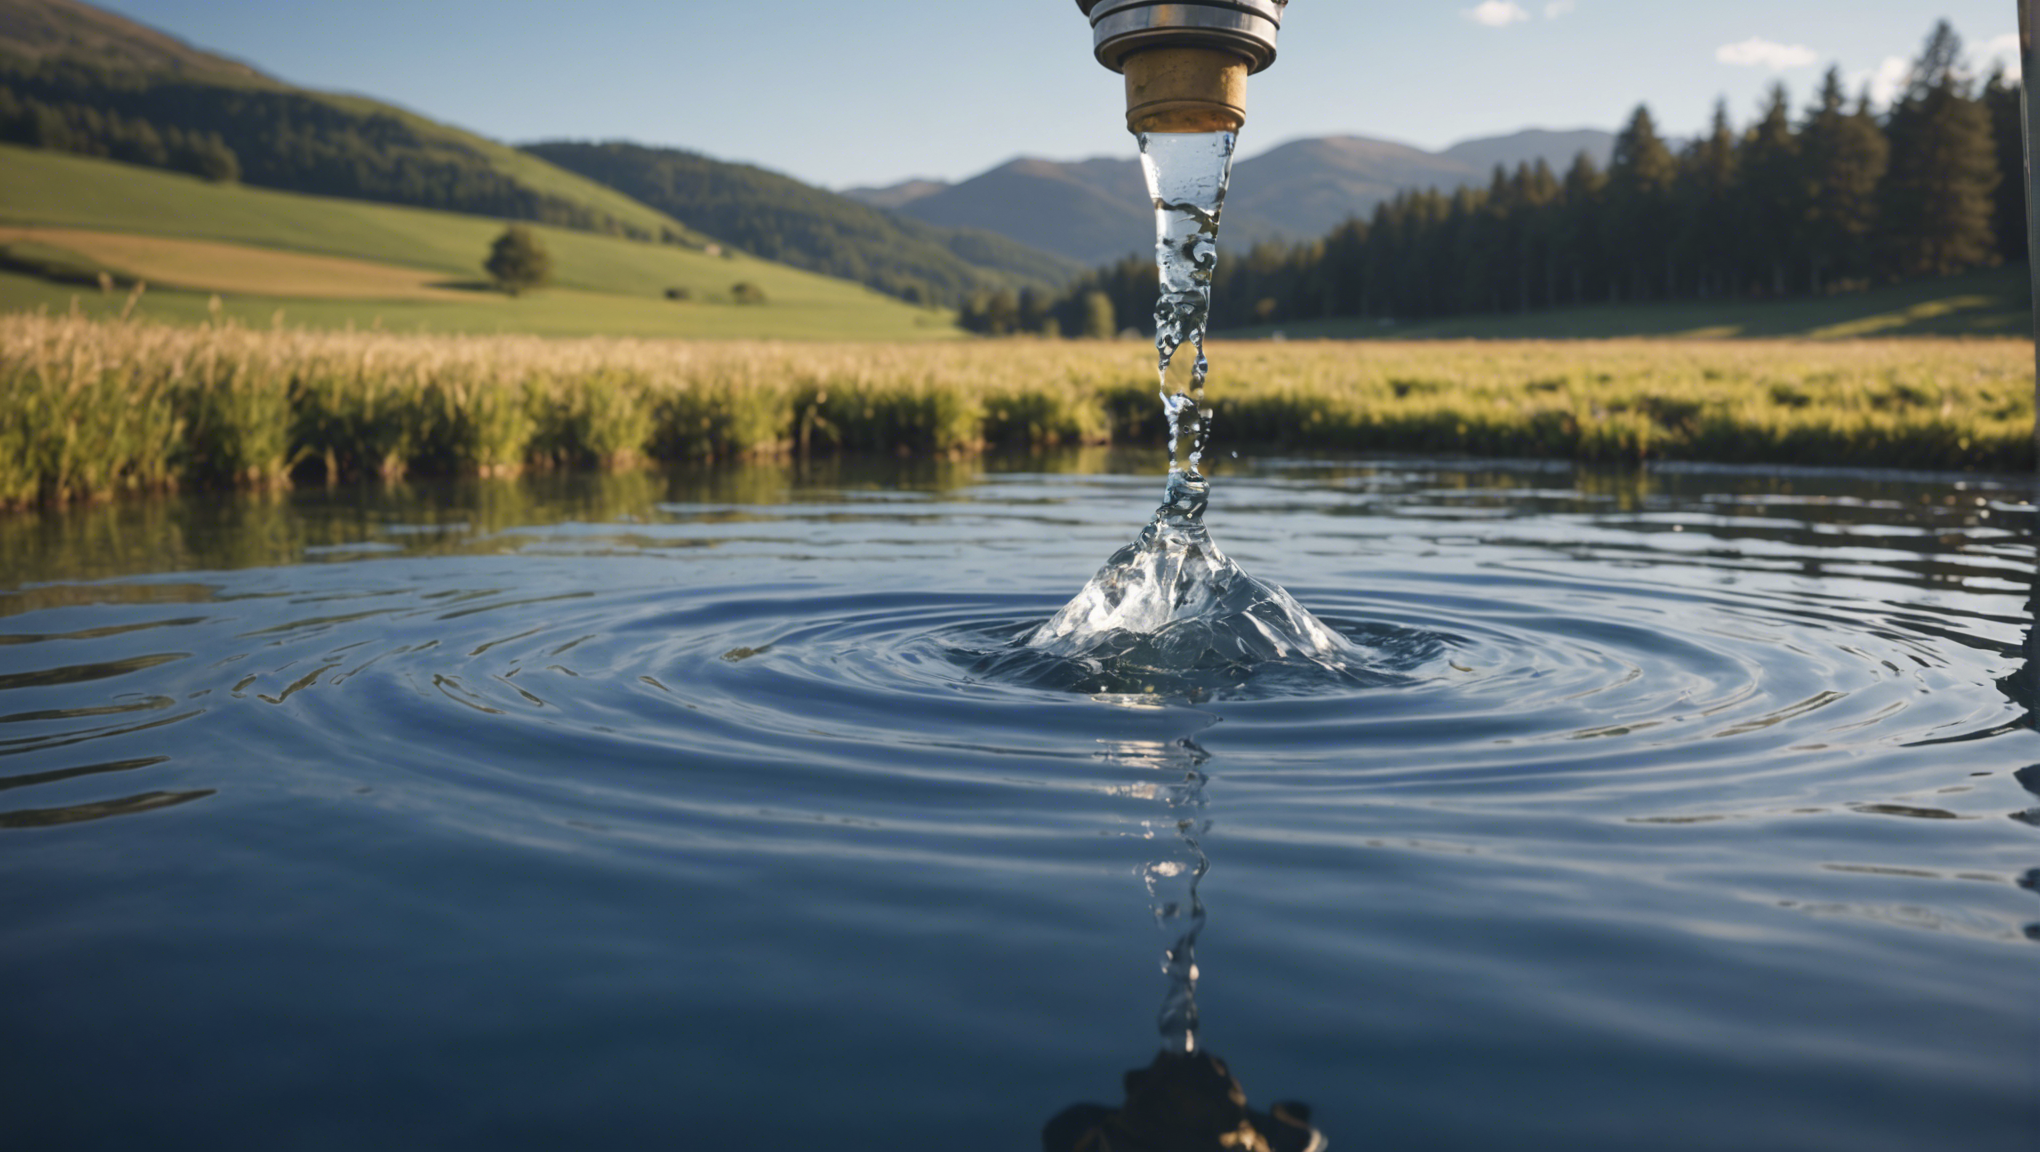 découvrez la définition du mot 'potable' et son importance pour la santé, ainsi que les critères nécessaires pour qu'une eau soit considérée comme potable.